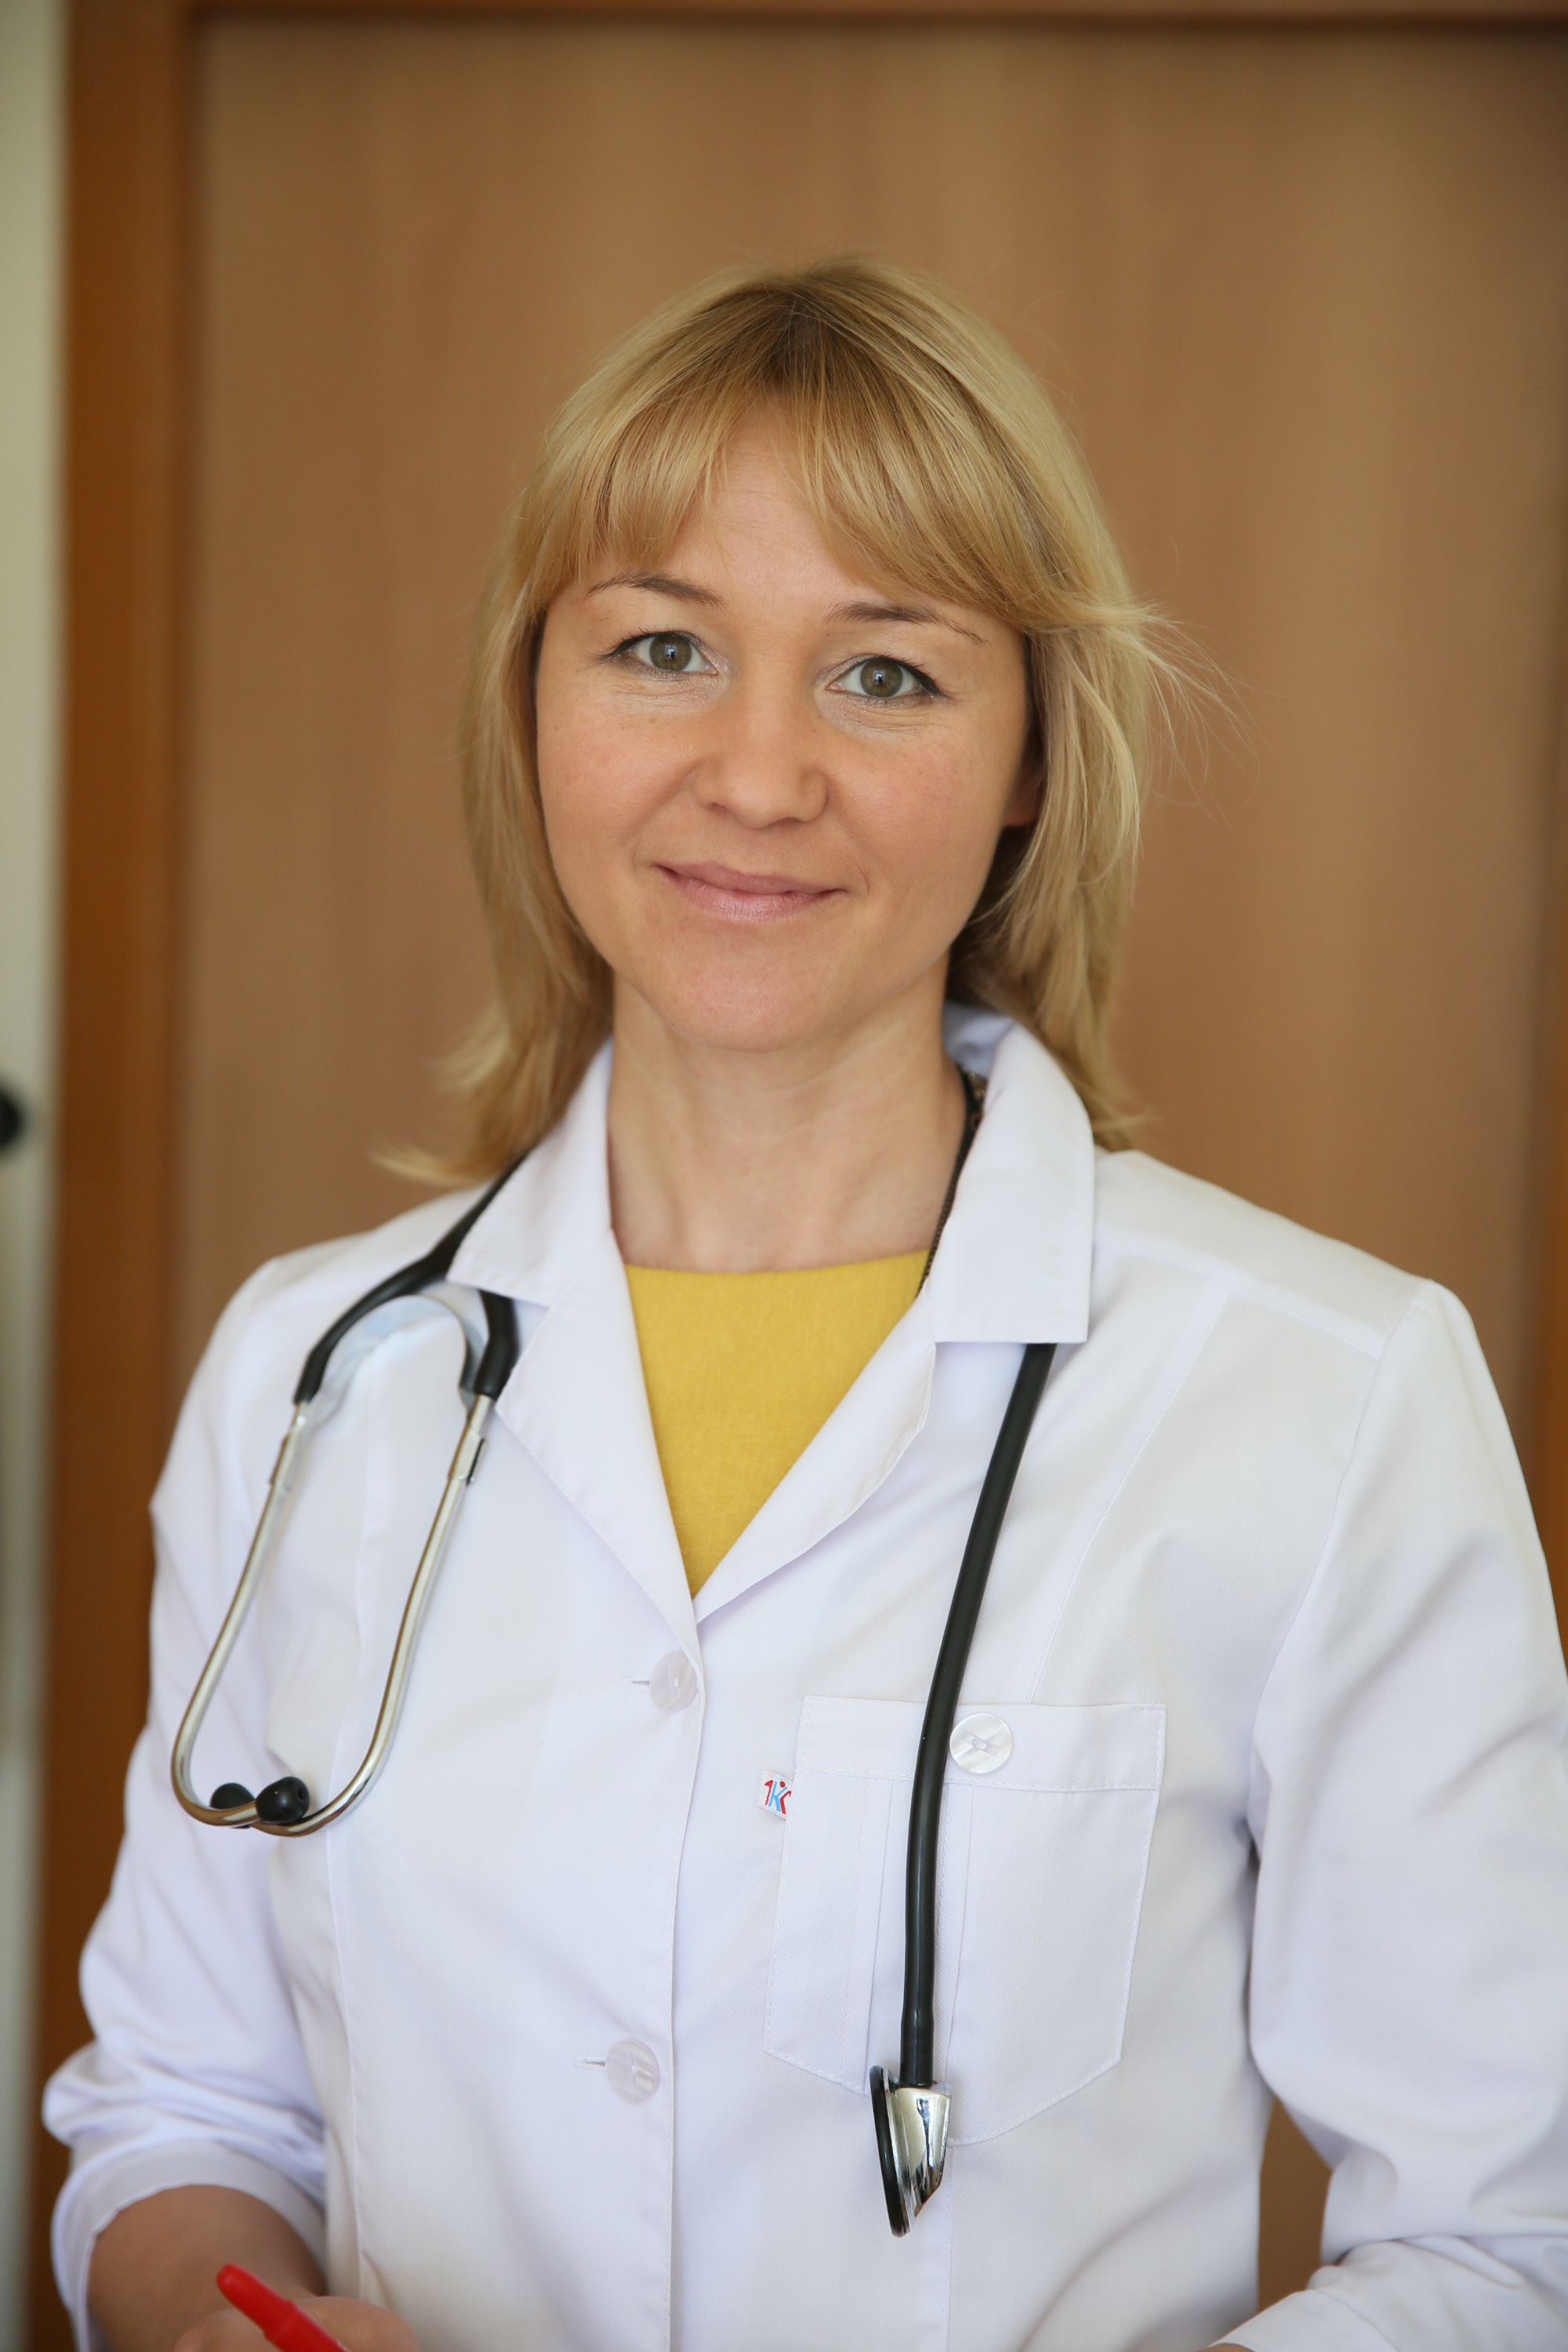 Анна Еремеева — главный внештатный детский специалист психиатр-нарколог Архангельской области